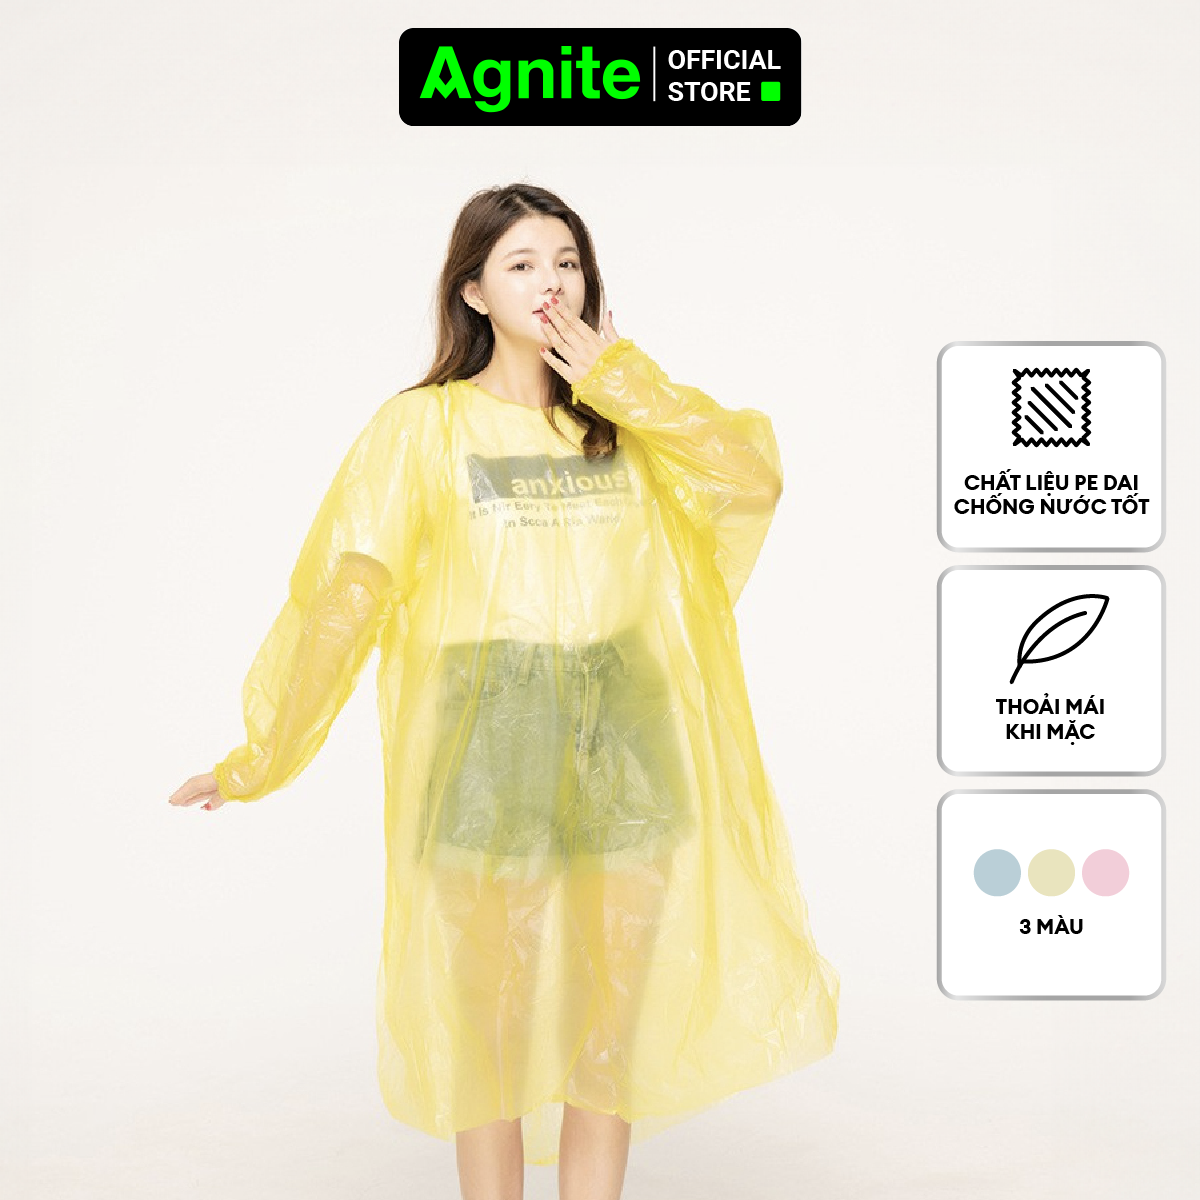 Áo mưa thiết kế thời trang Agnite - Chất liệu PE siêu dai - Màu sắc đa dạng - VS4073